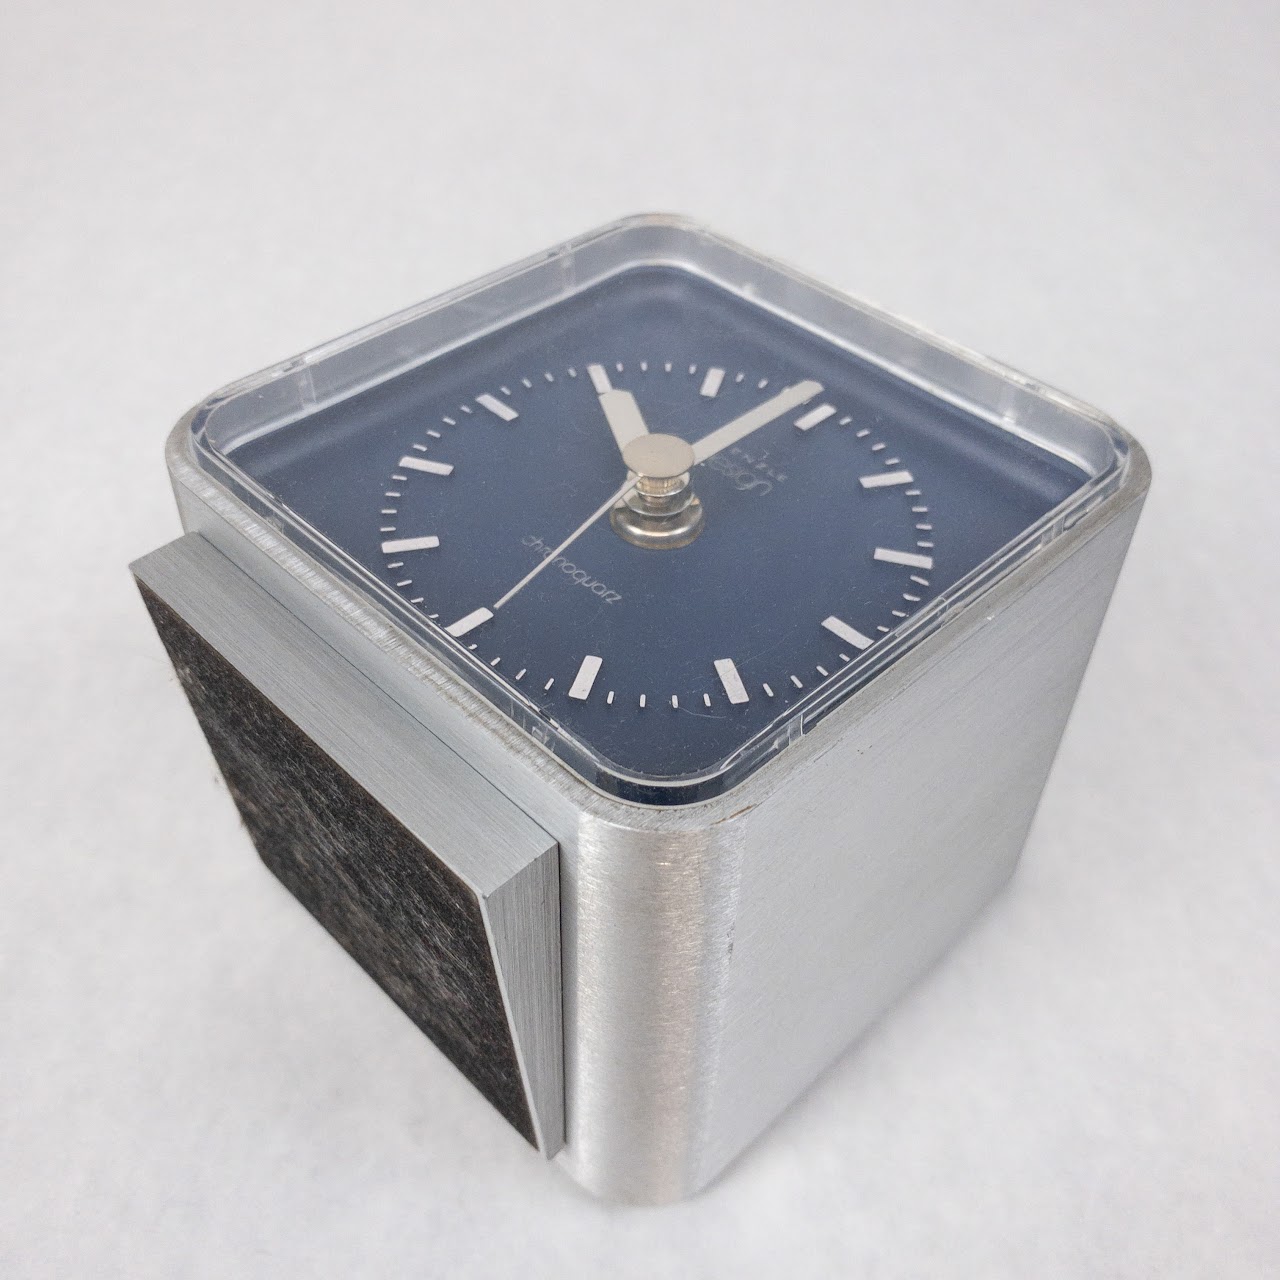 Kienzle Vintage Chronoquarz Desk Clock